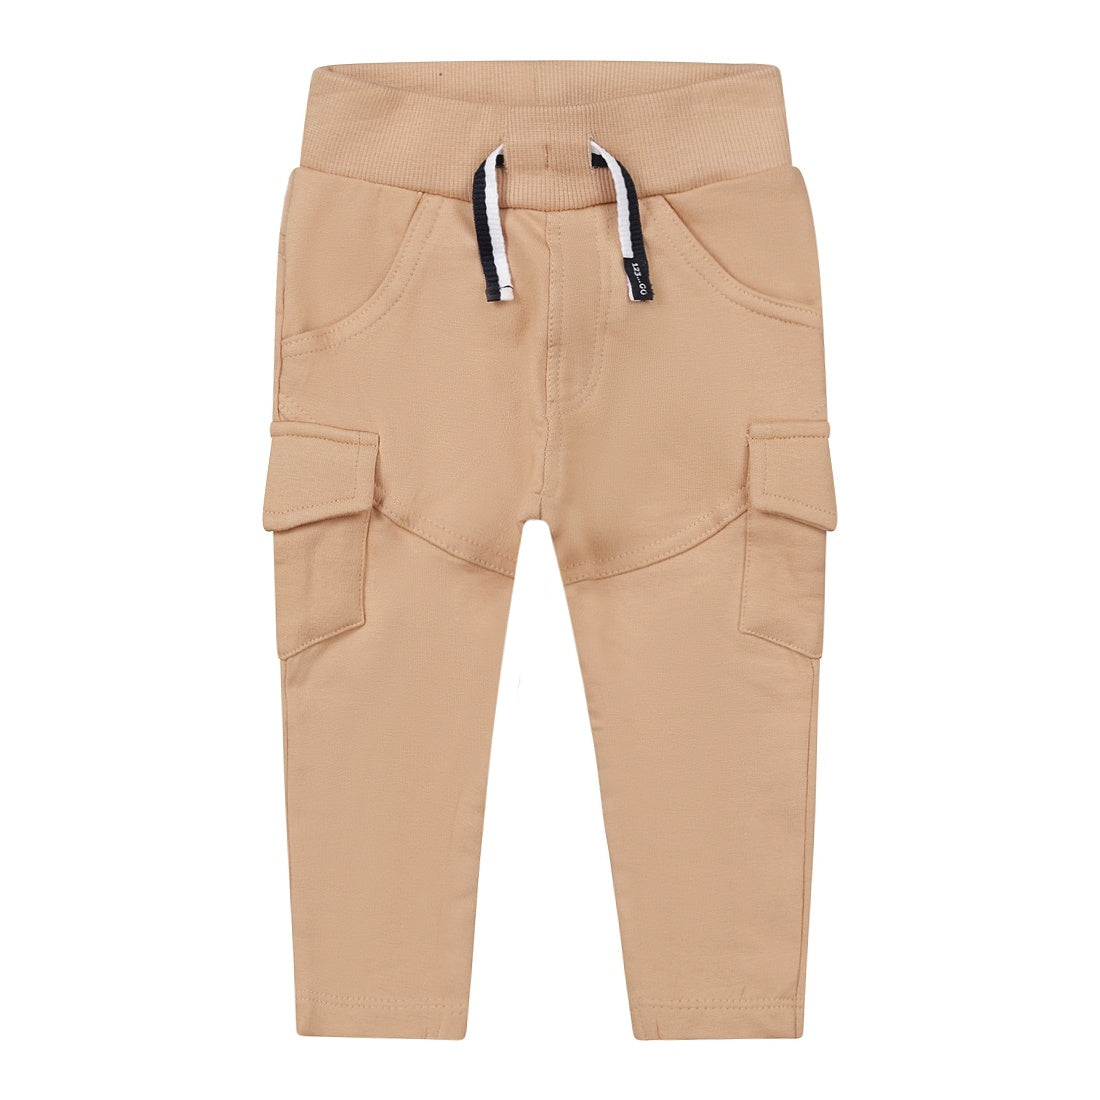 Dirkje boys cargo jogging trousers light brown